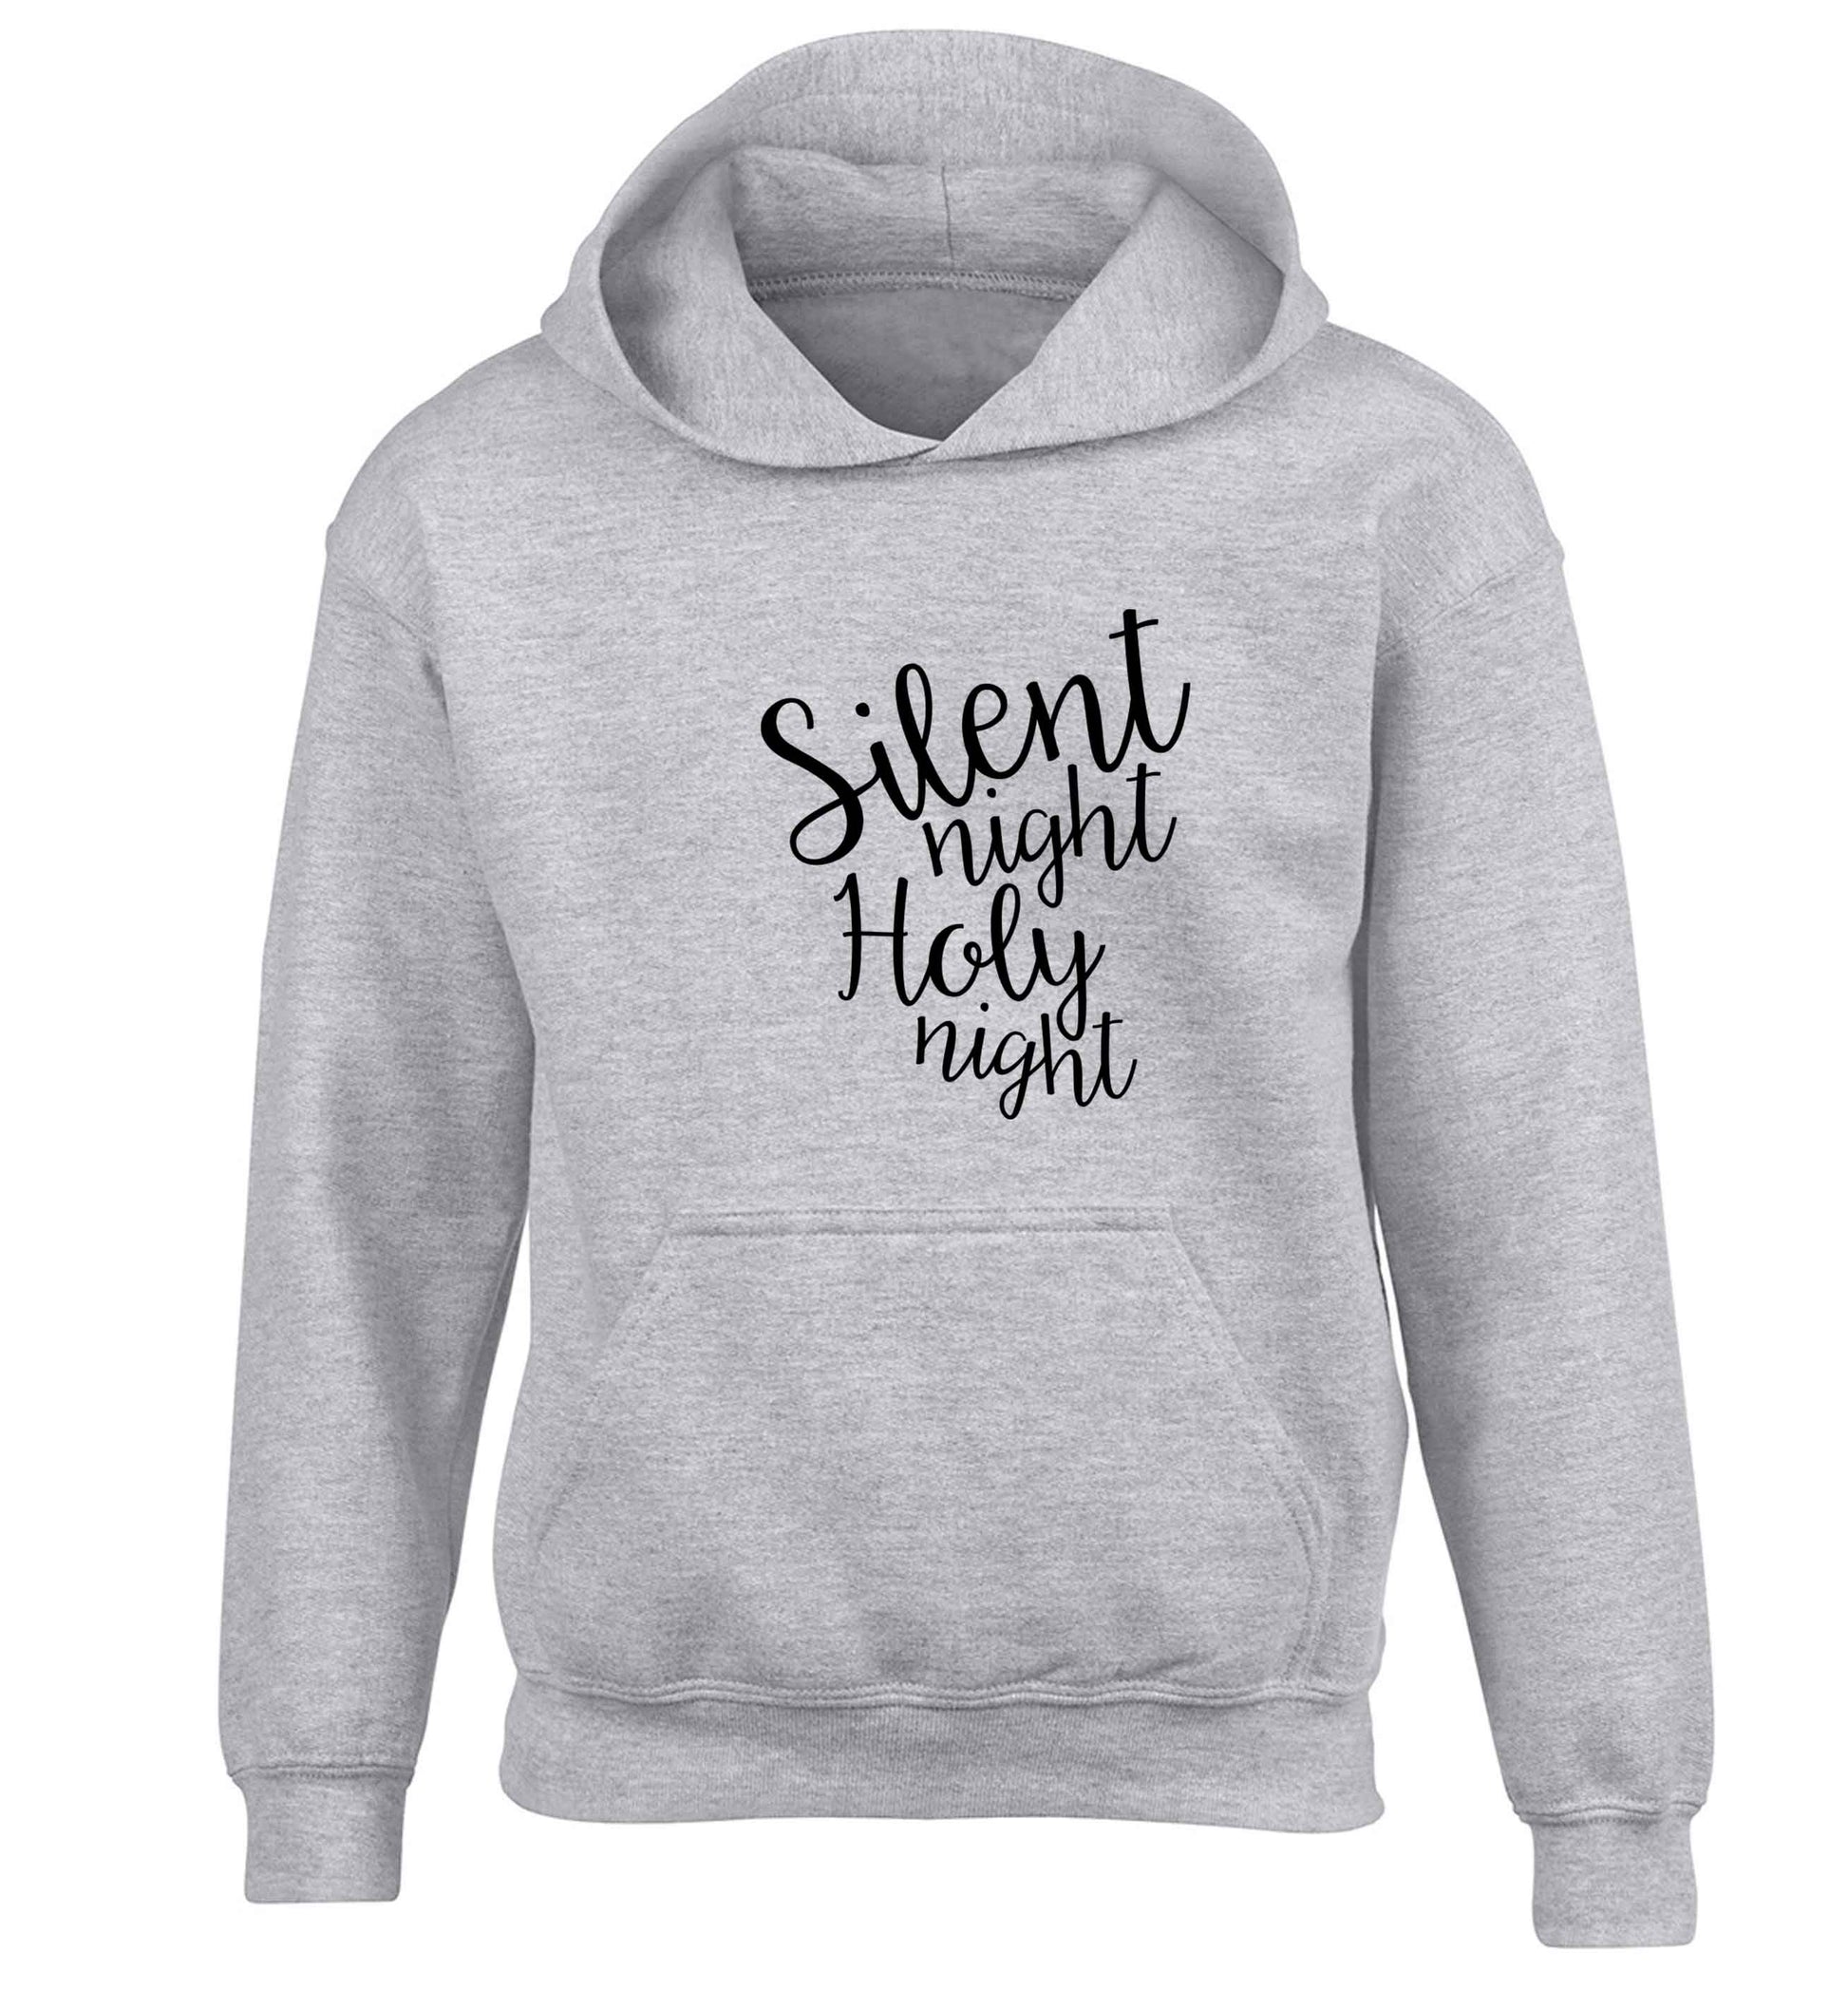 Silent night holy night children's grey hoodie 12-13 Years